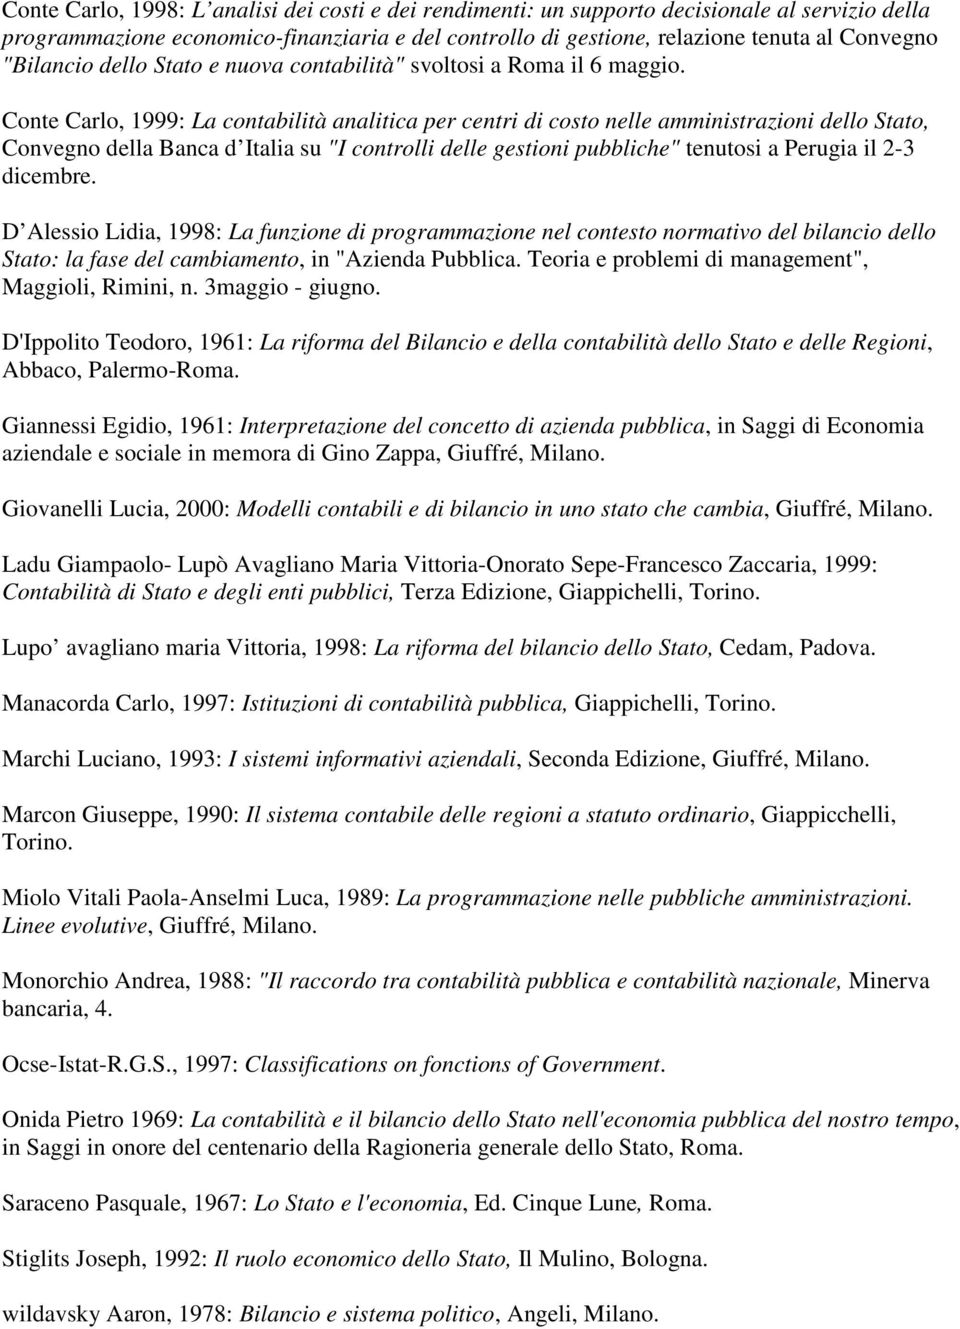 Conte Carlo, 1999: La contabilità analitica per centri di costo nelle amministrazioni dello Stato, Convegno della Banca d Italia su "I controlli delle gestioni pubbliche" tenutosi a Perugia il 2-3